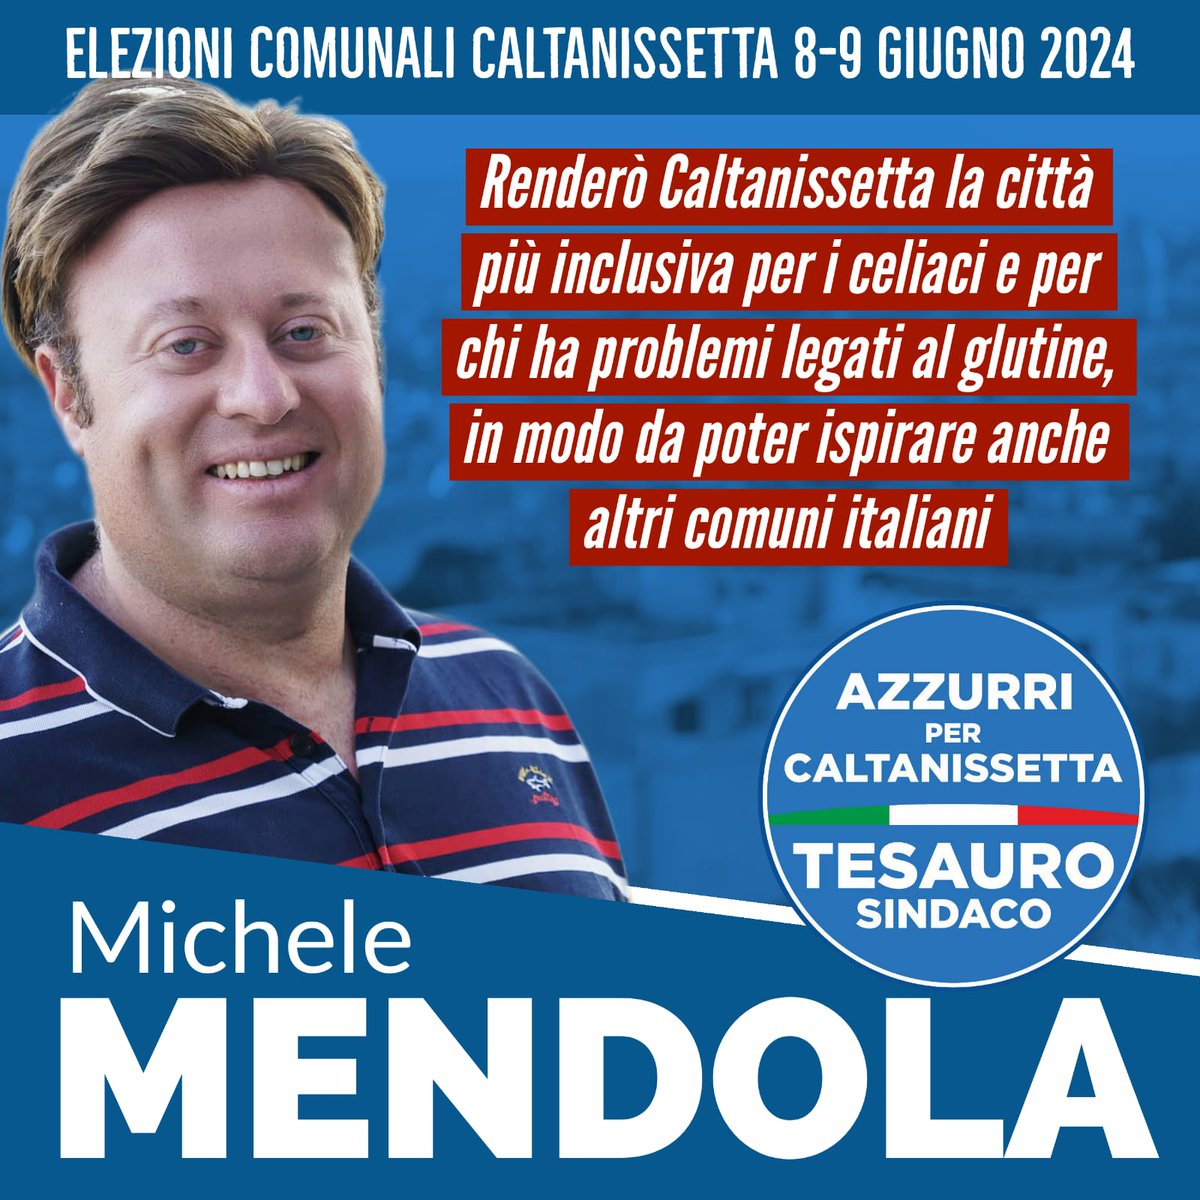 𝙍𝙚𝙣𝙙𝙚𝙧𝙤̀ 𝘾𝙖𝙡𝙩𝙖𝙣𝙞𝙨𝙨𝙚𝙩𝙩𝙖 𝙡𝙖 𝙘𝙞𝙩𝙩𝙖̀ 𝙥𝙞𝙪̀ 𝙞𝙣𝙘𝙡𝙪𝙨𝙞𝙫𝙖 𝙙'𝙄𝙩𝙖𝙡𝙞𝙖 𝙥𝙚𝙧 𝙞𝙡 𝙎𝙚𝙣𝙯𝙖 𝙂𝙡𝙪𝙩𝙞𝙣𝙚: al Consiglio Comunale di Caltanissetta, l'8 e 9 giugno 2024, vota MENDOLA 

#senzaglutine #glutenfree #michelemendola #caltanissetta